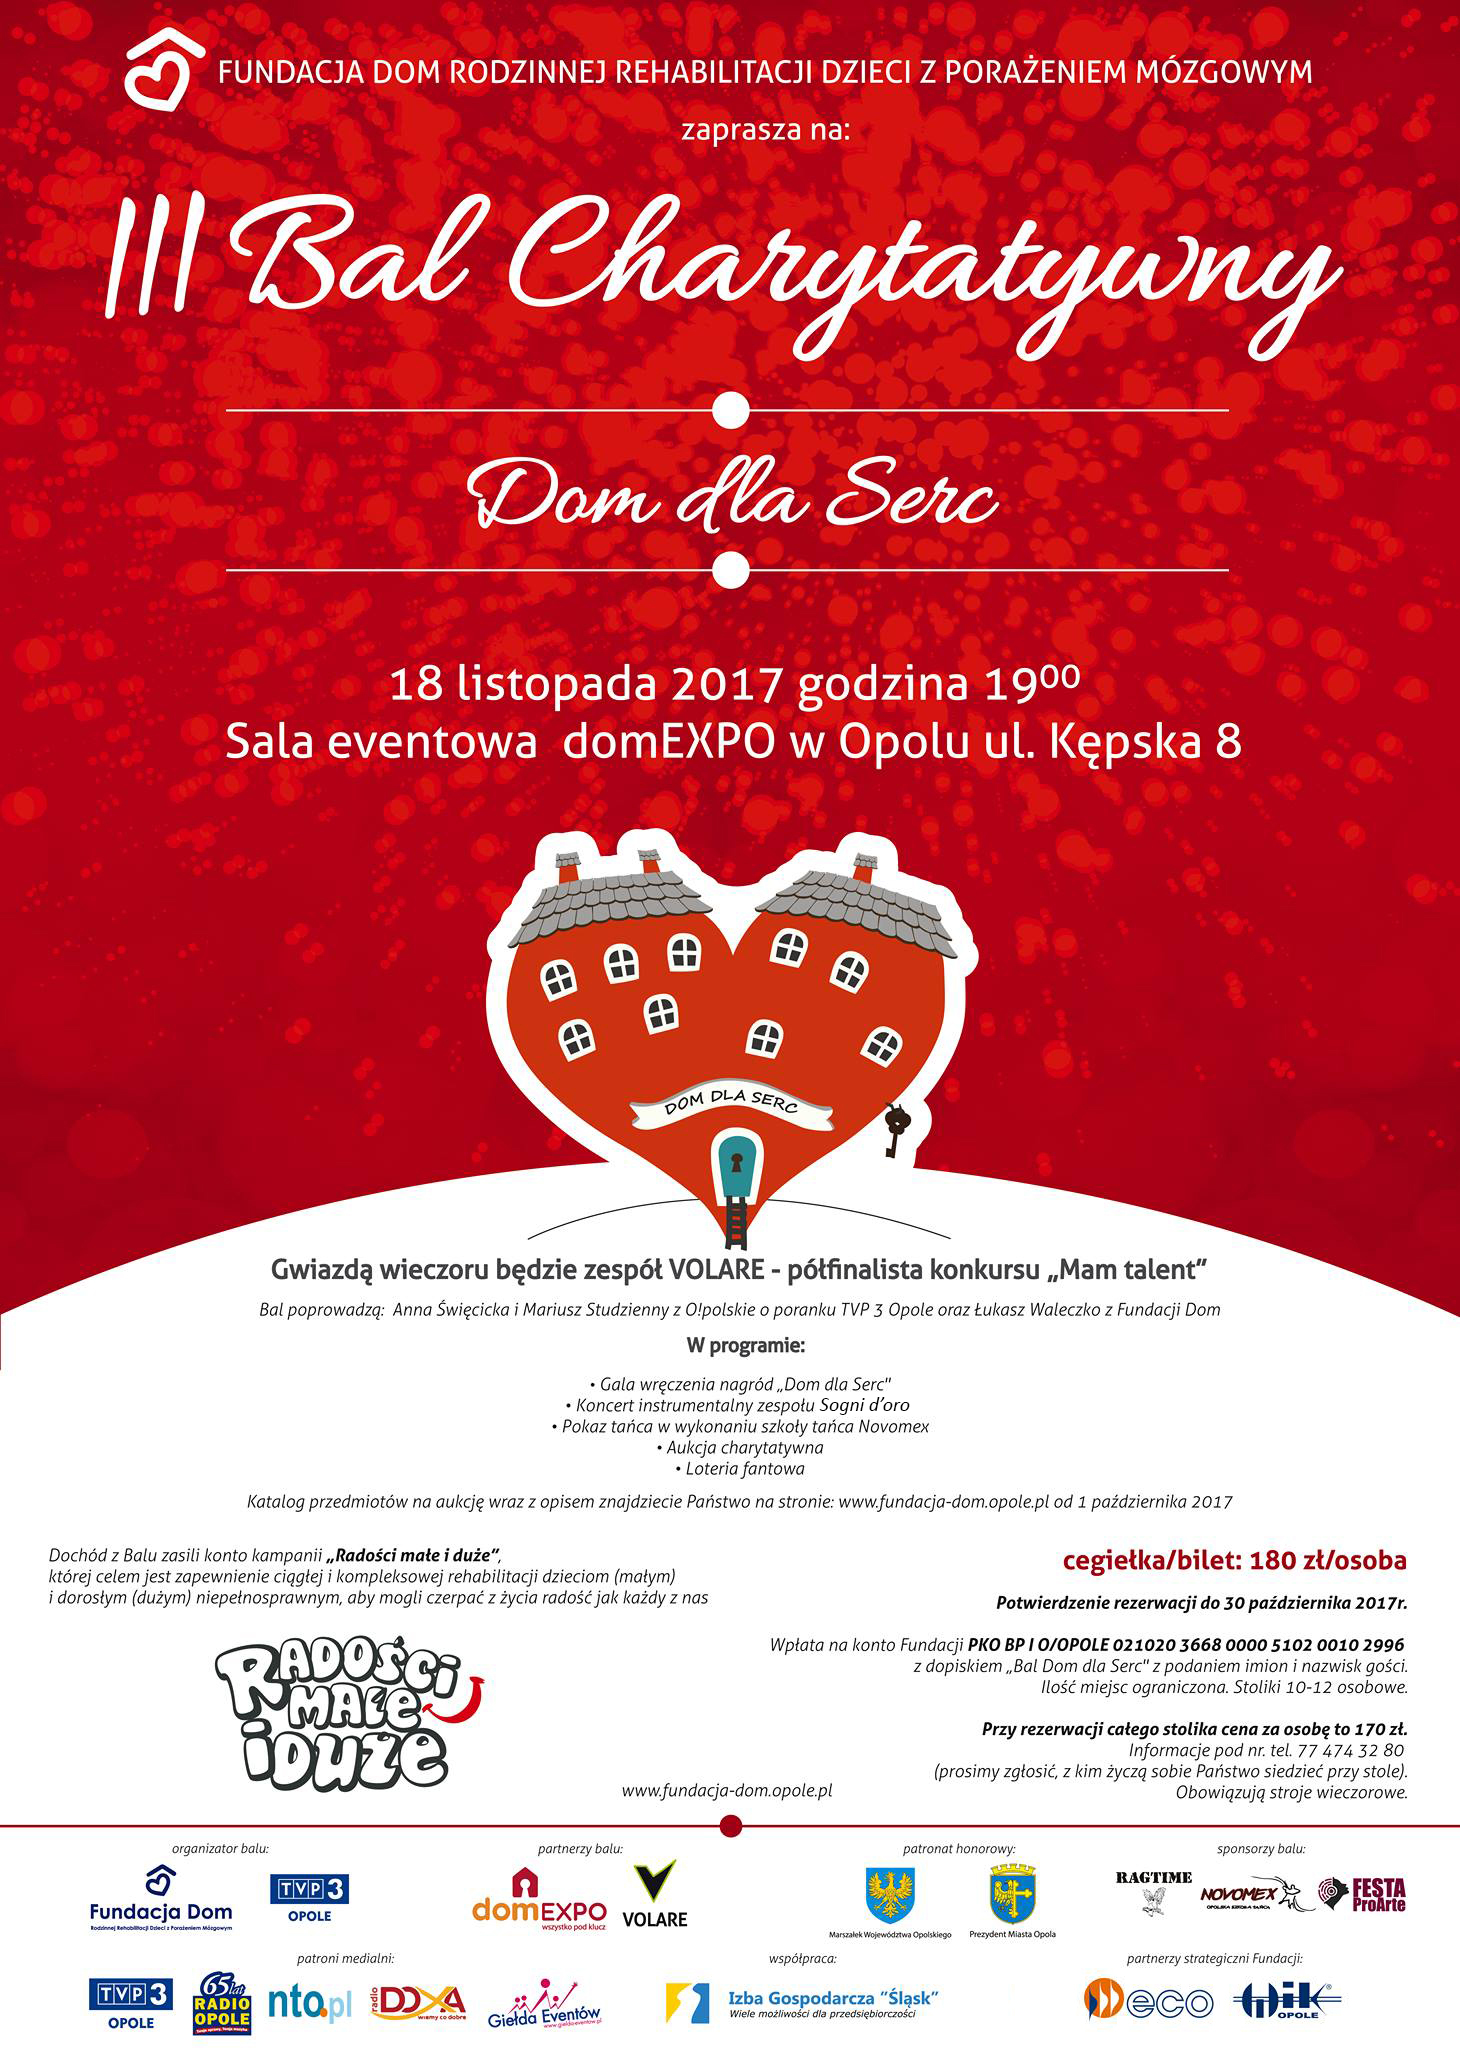 Bal charytatywny 'Dom dla Serc' odbędzie się 18 listopada w domEXPO